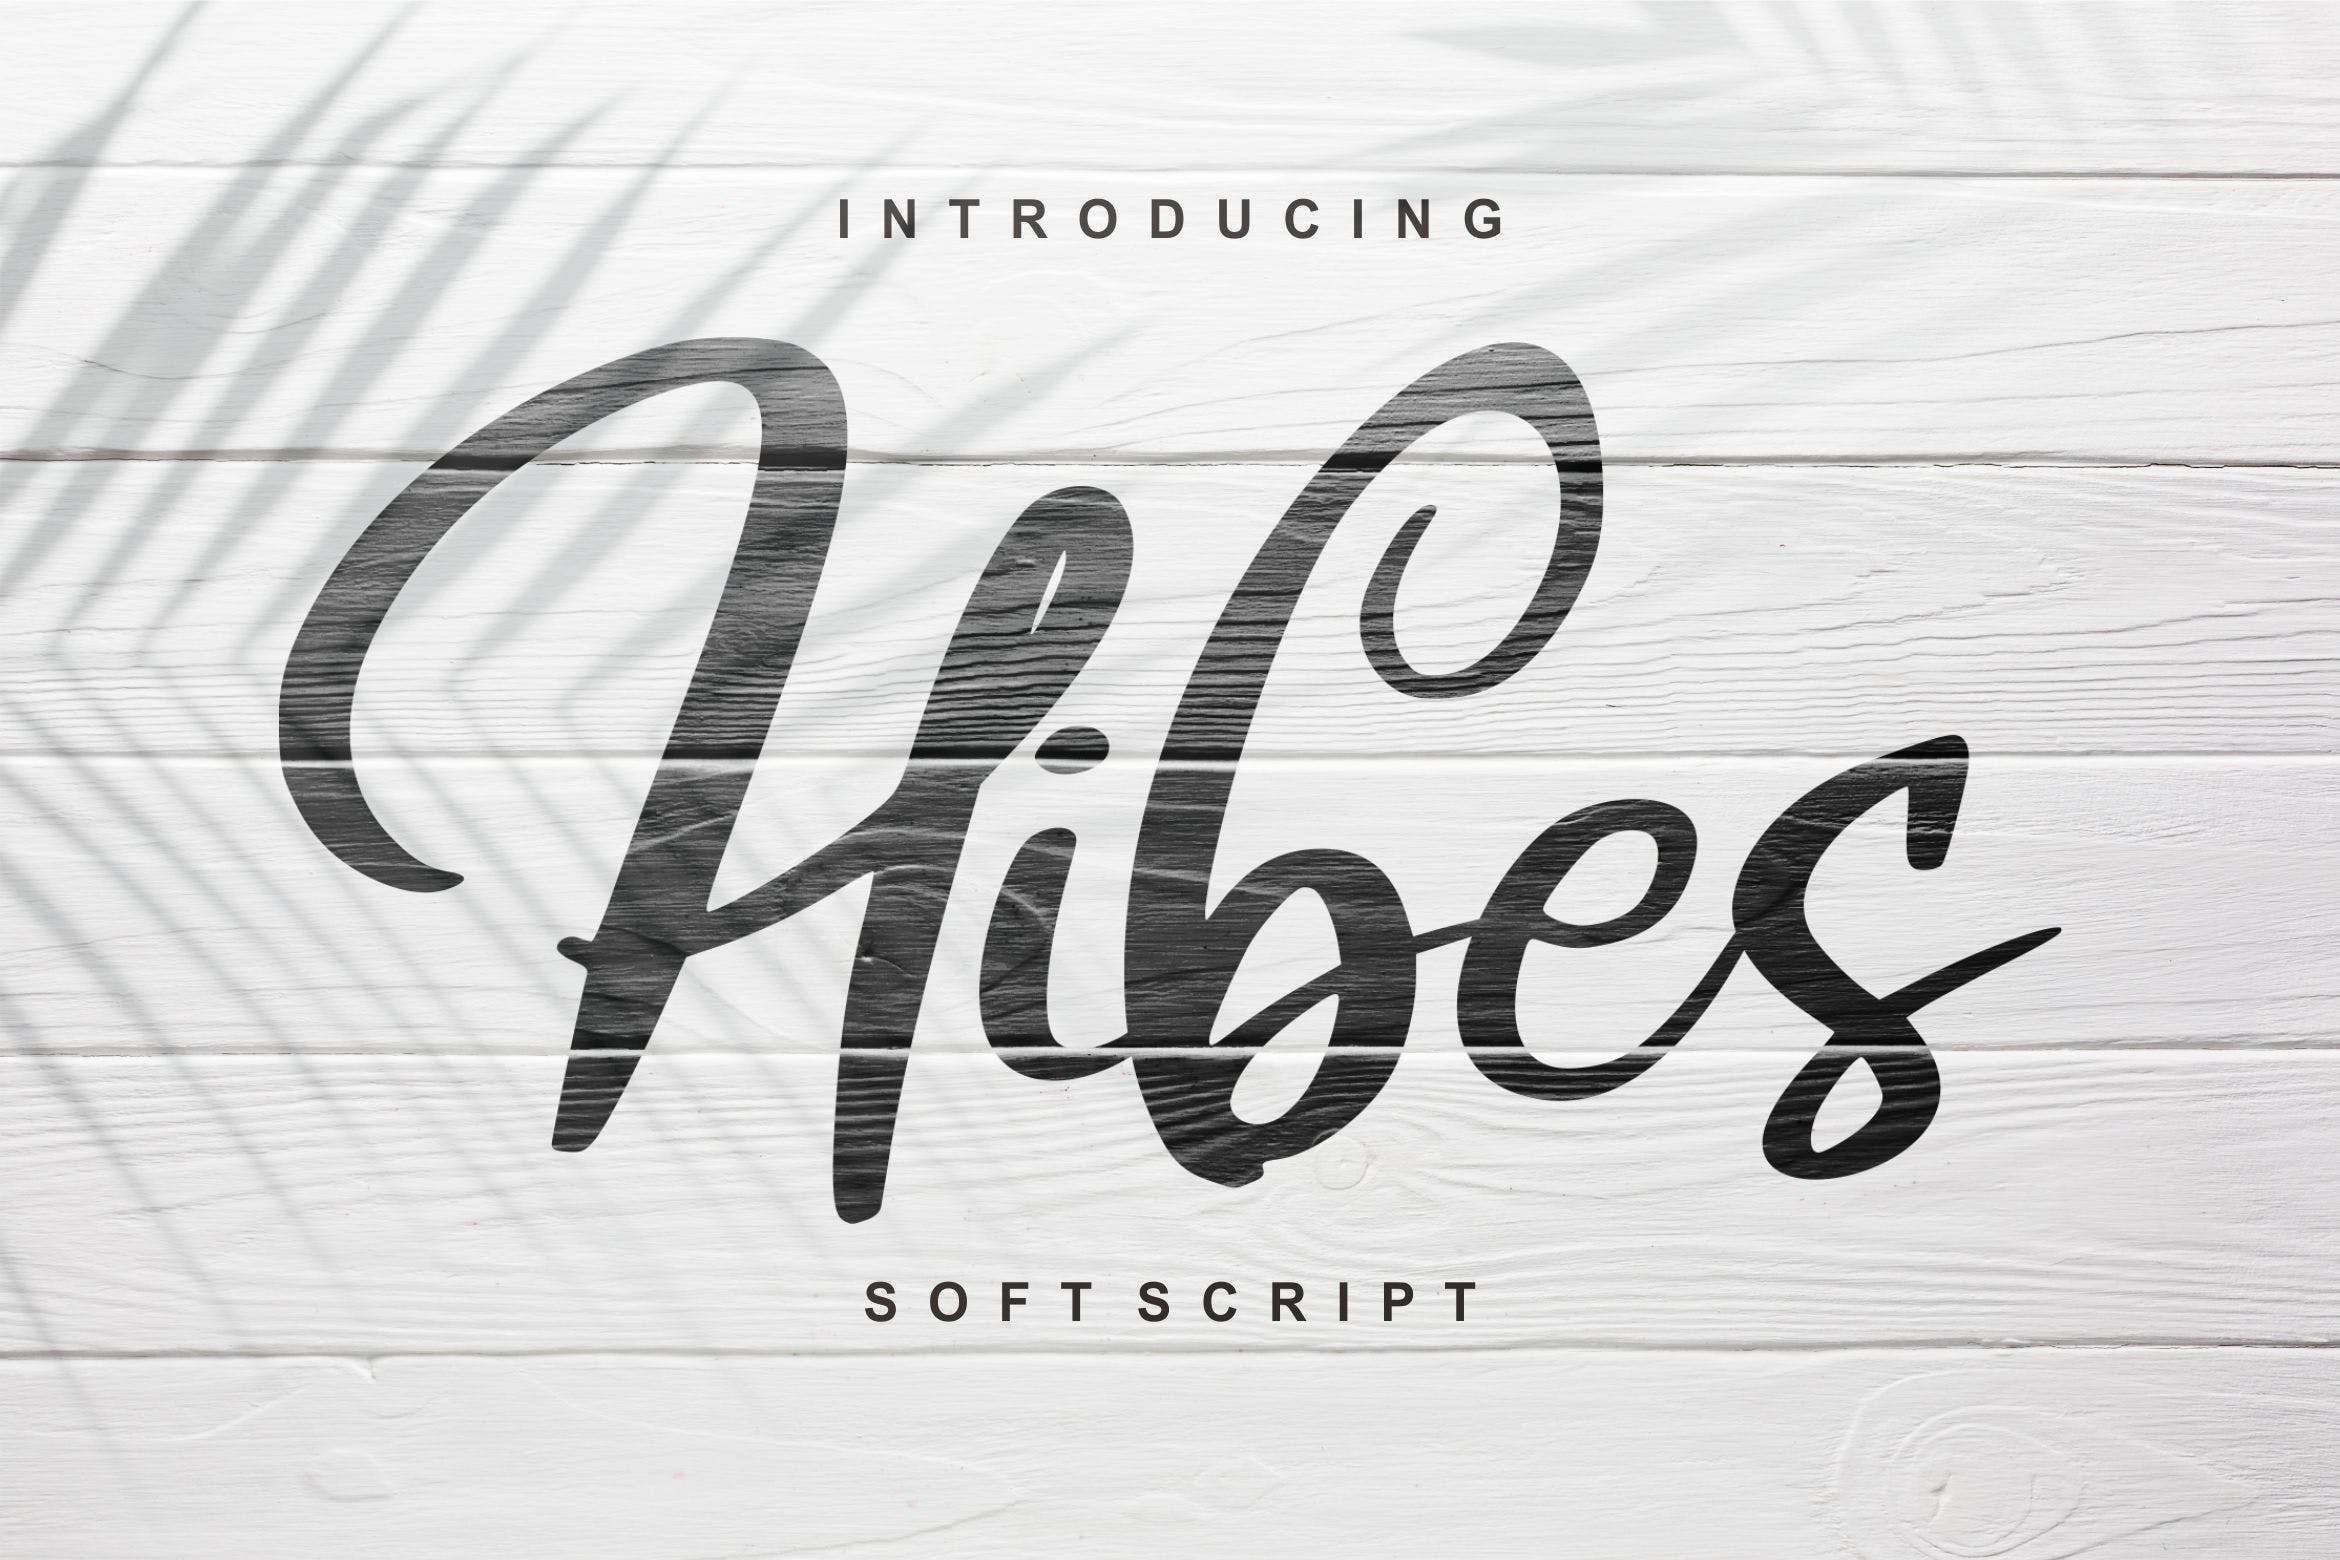 软笔刷书法风格英文手写字体亿图网易图库精选 Hibes | Soft Script Font插图